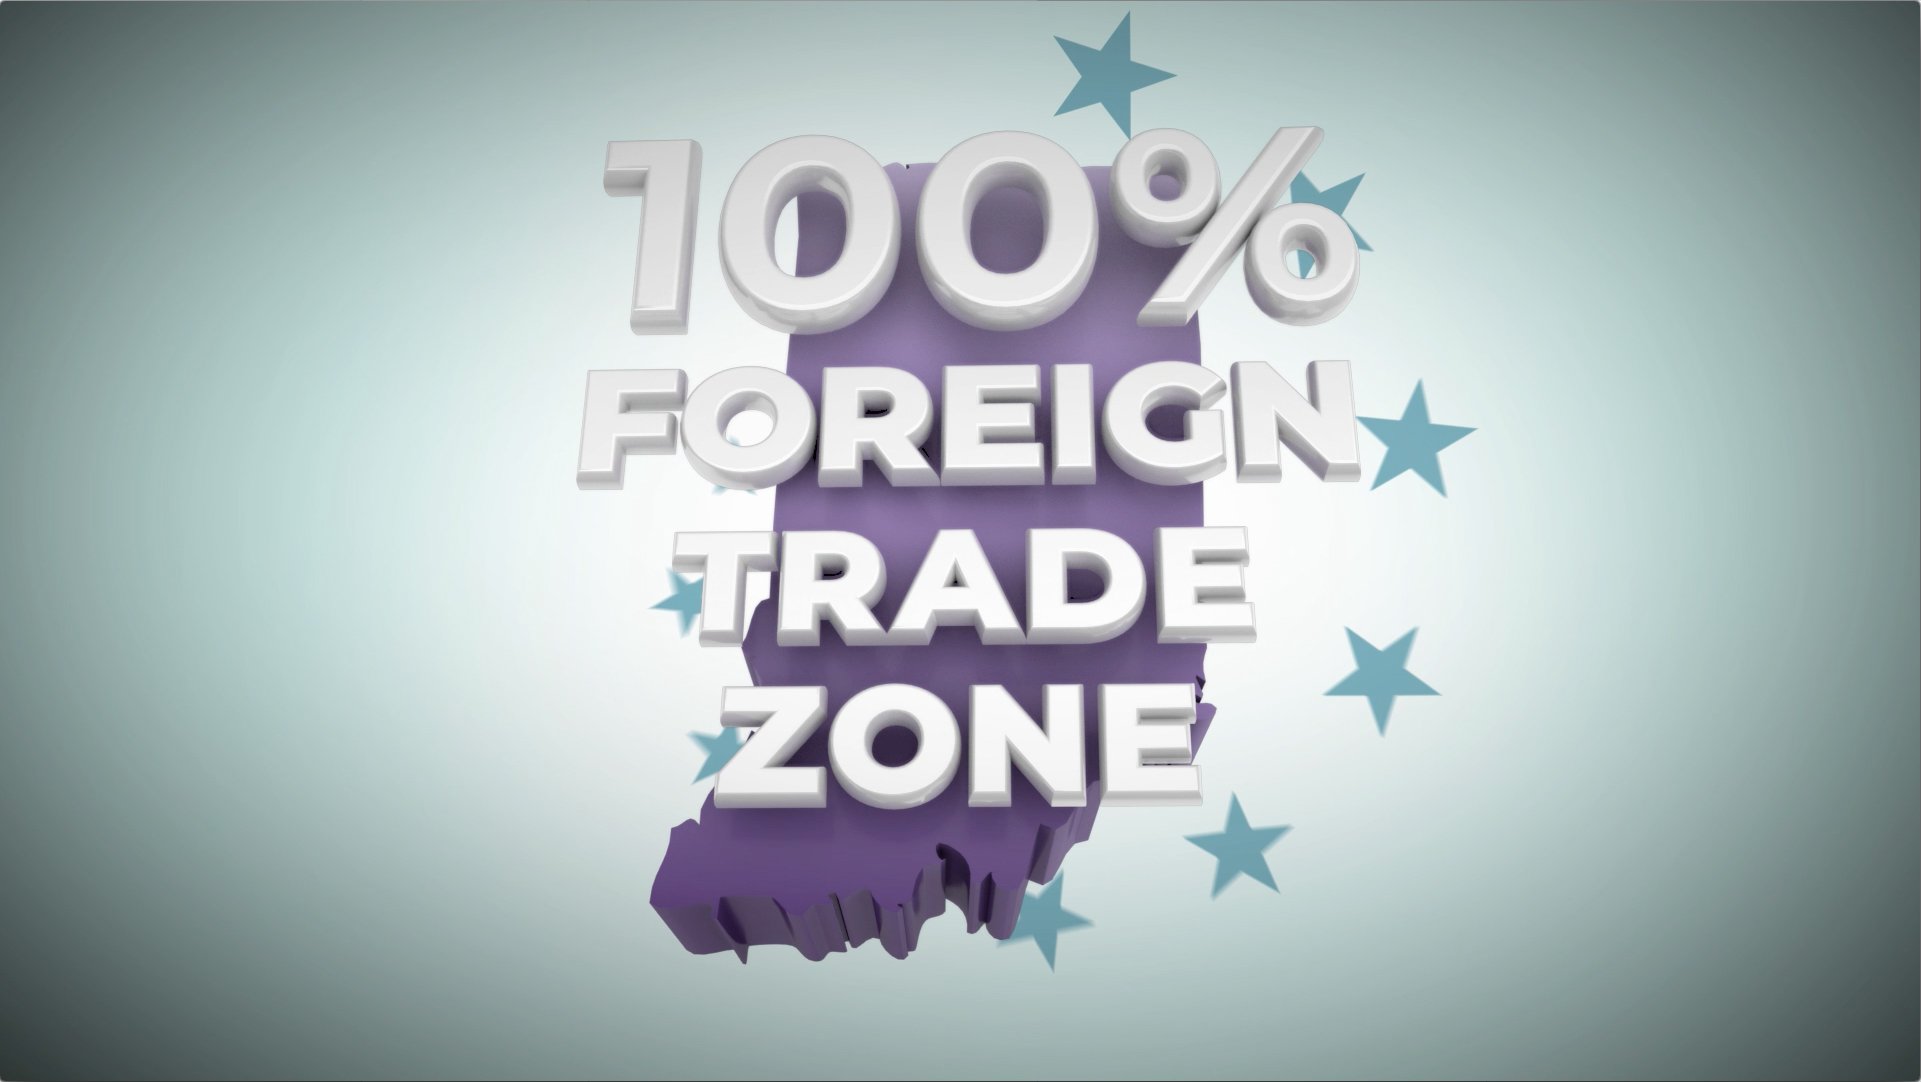 LEDO FTZ Economic Impact Video image